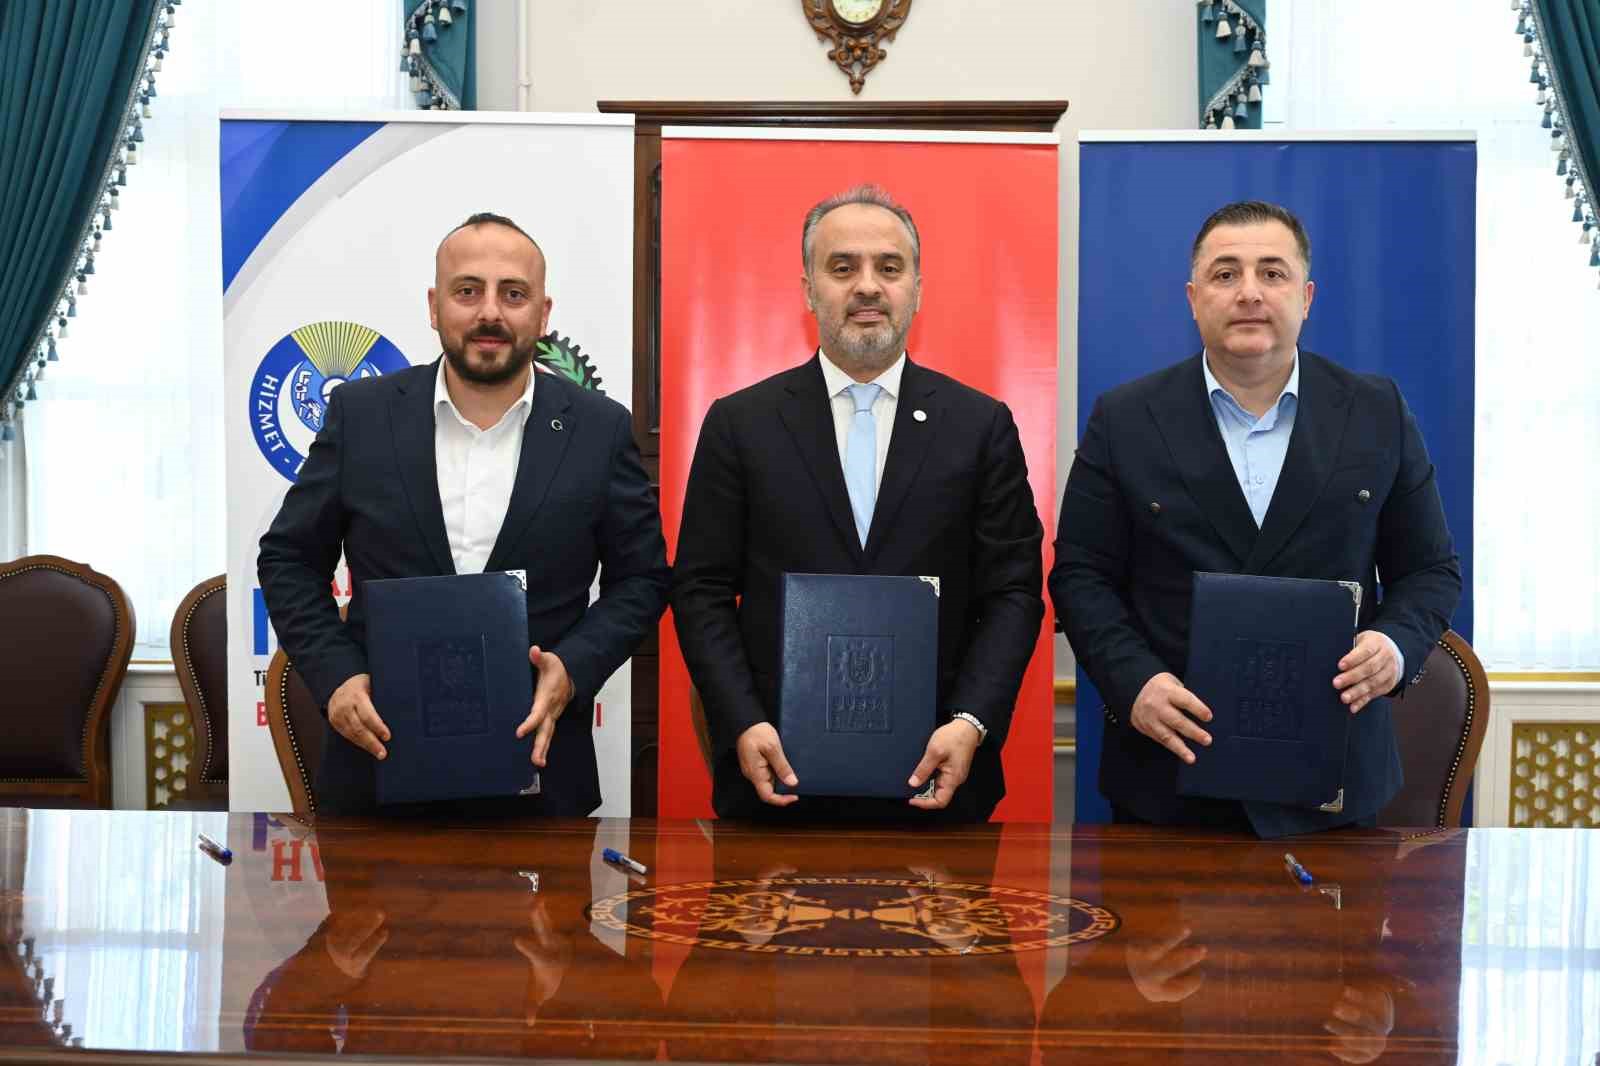 Bursa Büyükşehir Belediyesi ve BUSKİ işçileri için toplu sözleşme imzalandı